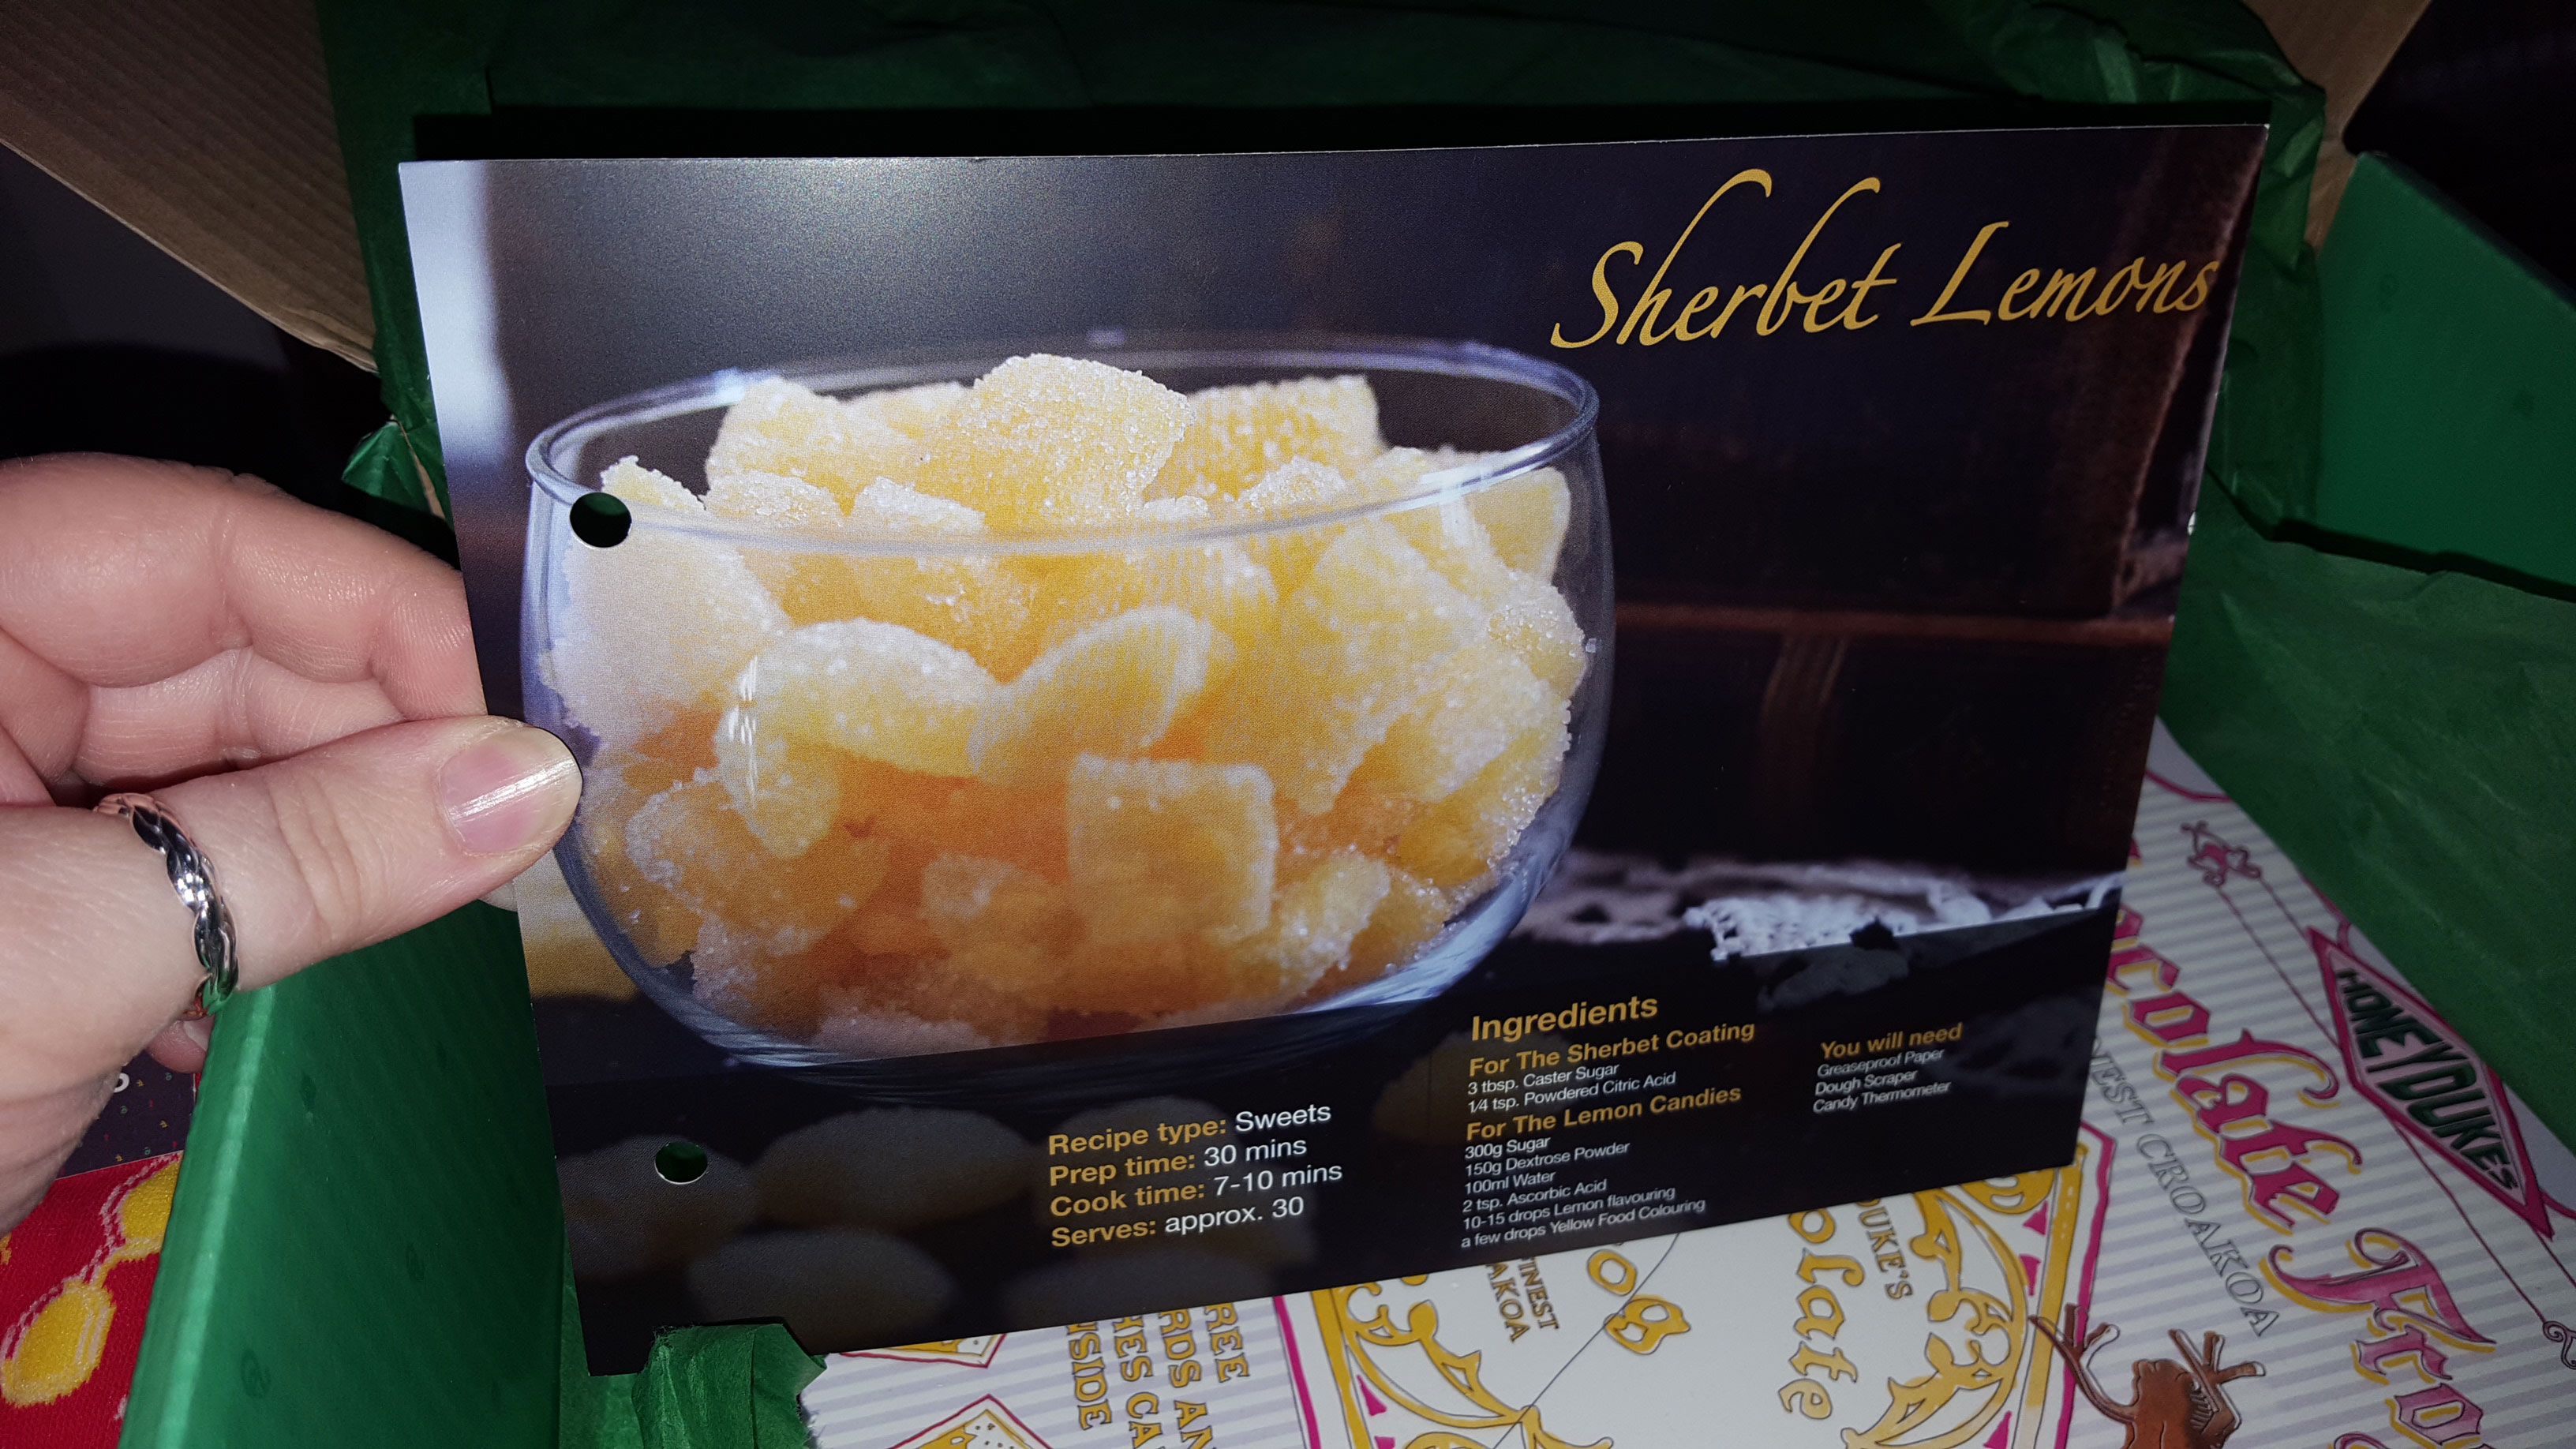 Sherbert Lemons recipe card